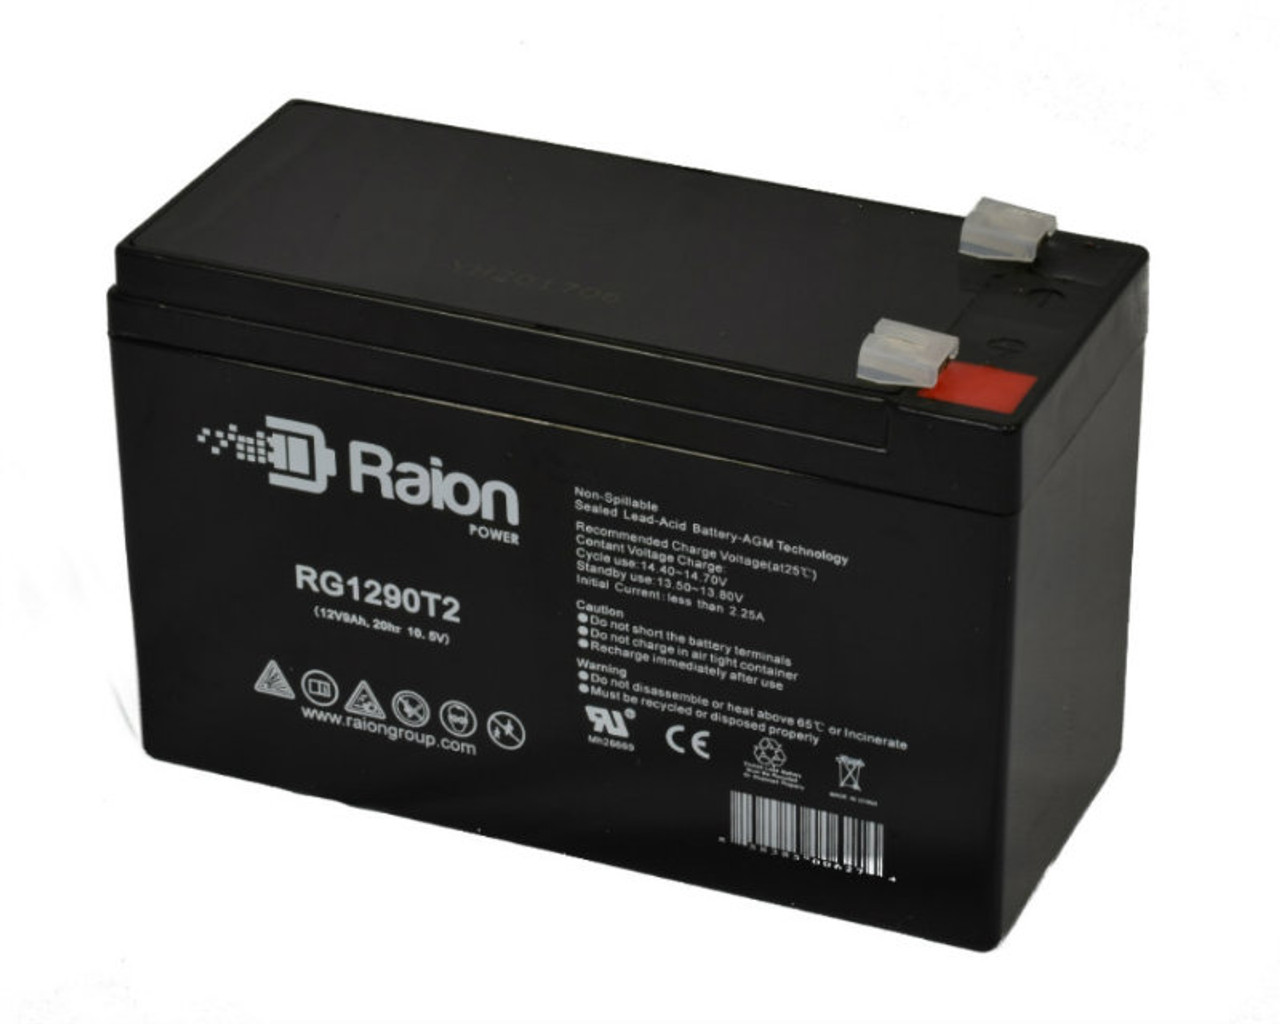 Raion Power RG1290T2 12V 9Ah AGM Battery for Energenie BAT-12V9AH